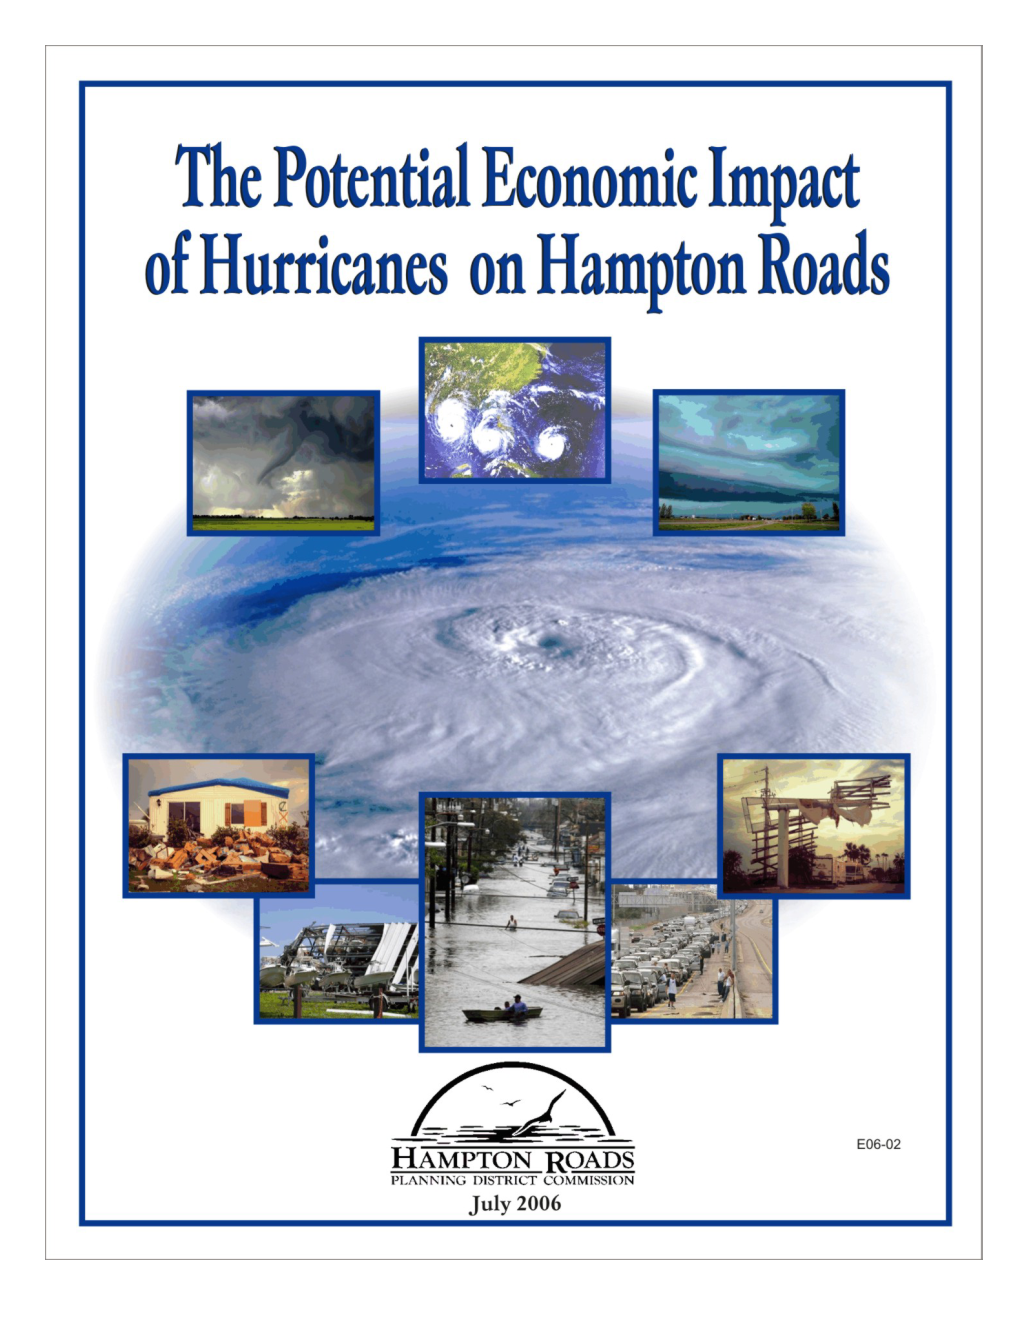 The Potential Economic Impact of Hurricanes on Hampton Roads